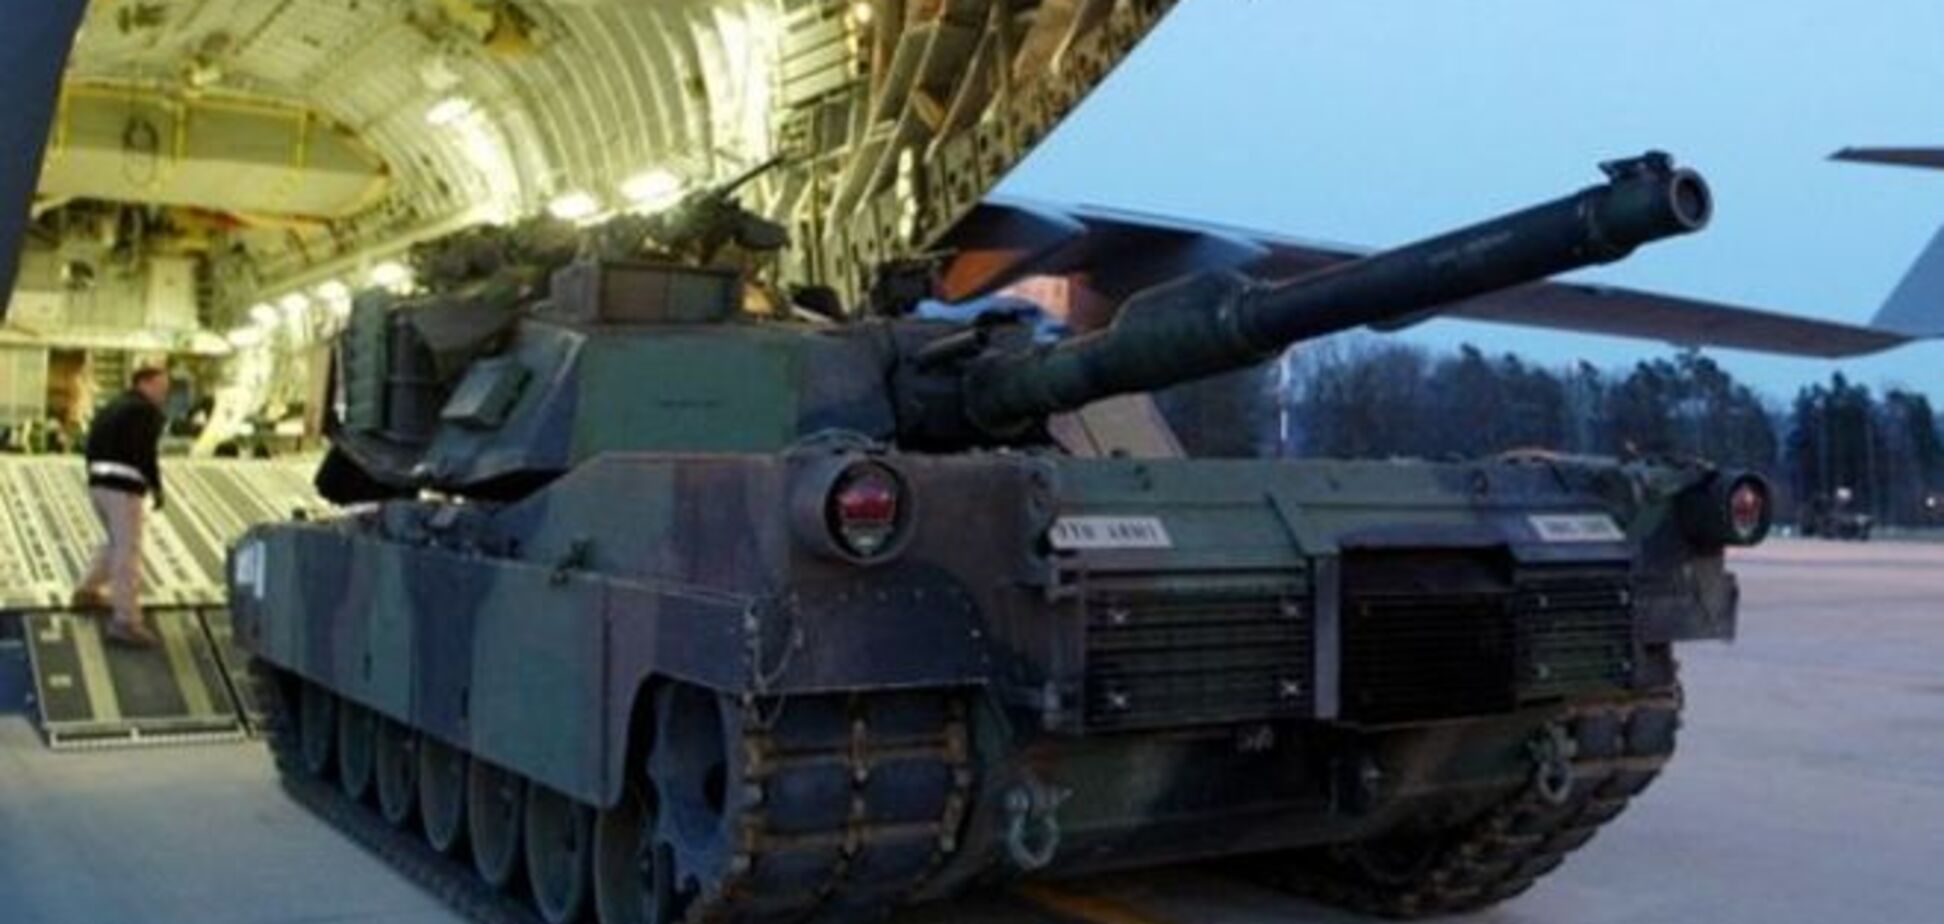  США перебрасывают свои танки поближе к границам России